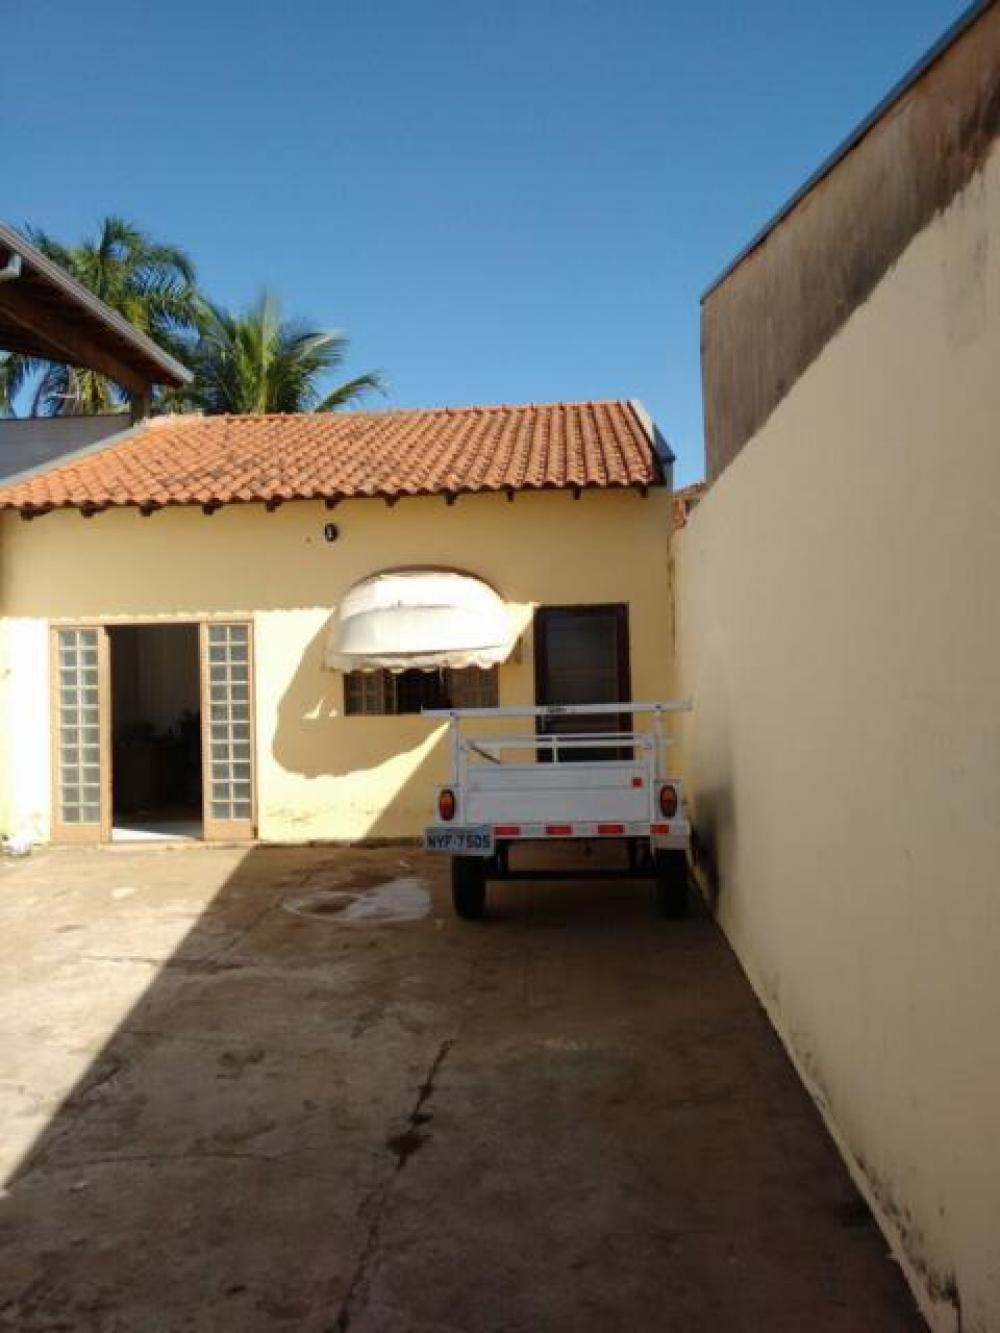 Comprar Casa / Padrão em Mirassol apenas R$ 280.000,00 - Foto 19